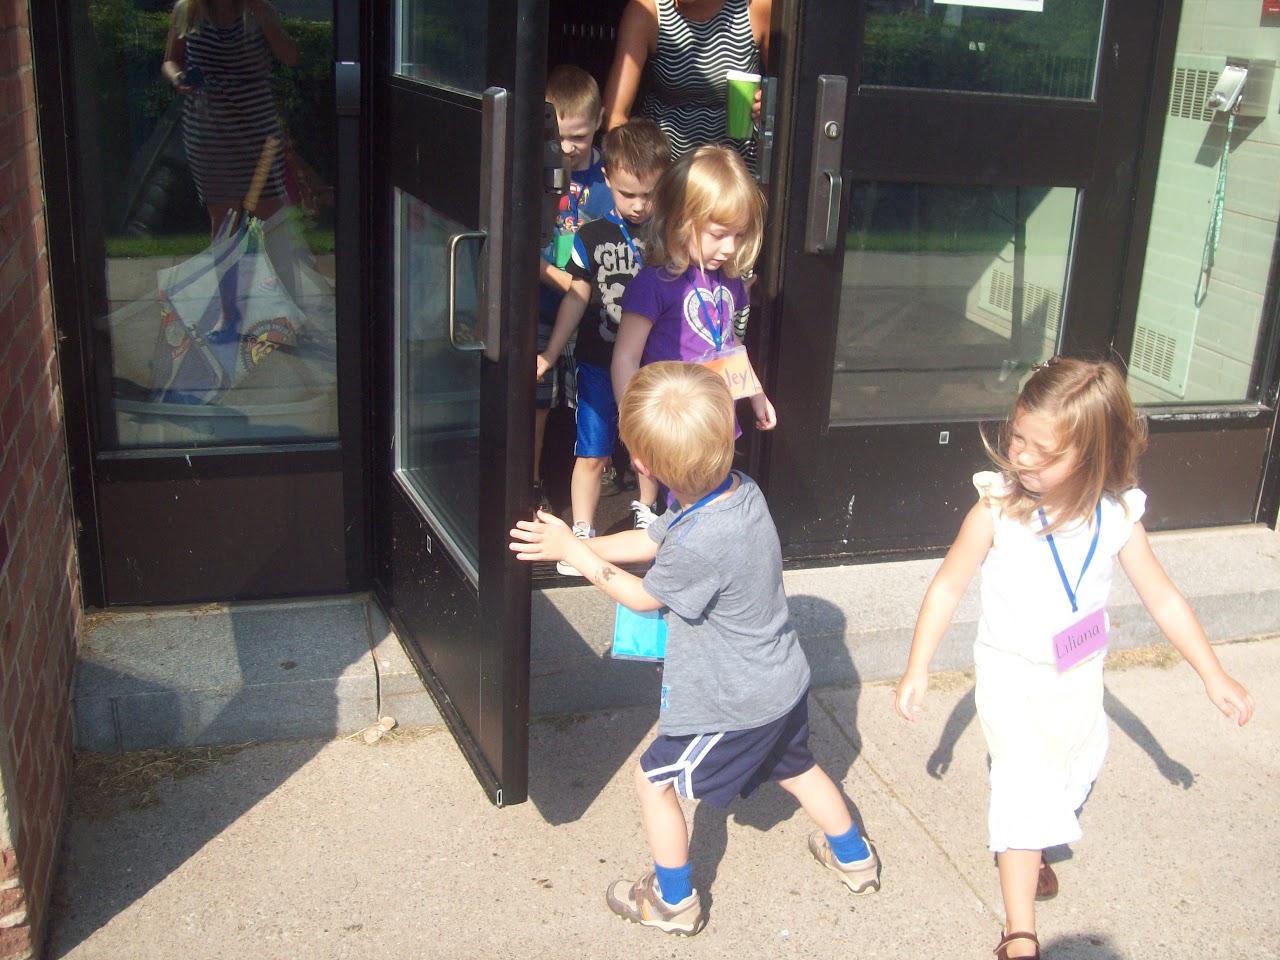 Kid opening the door to other kids